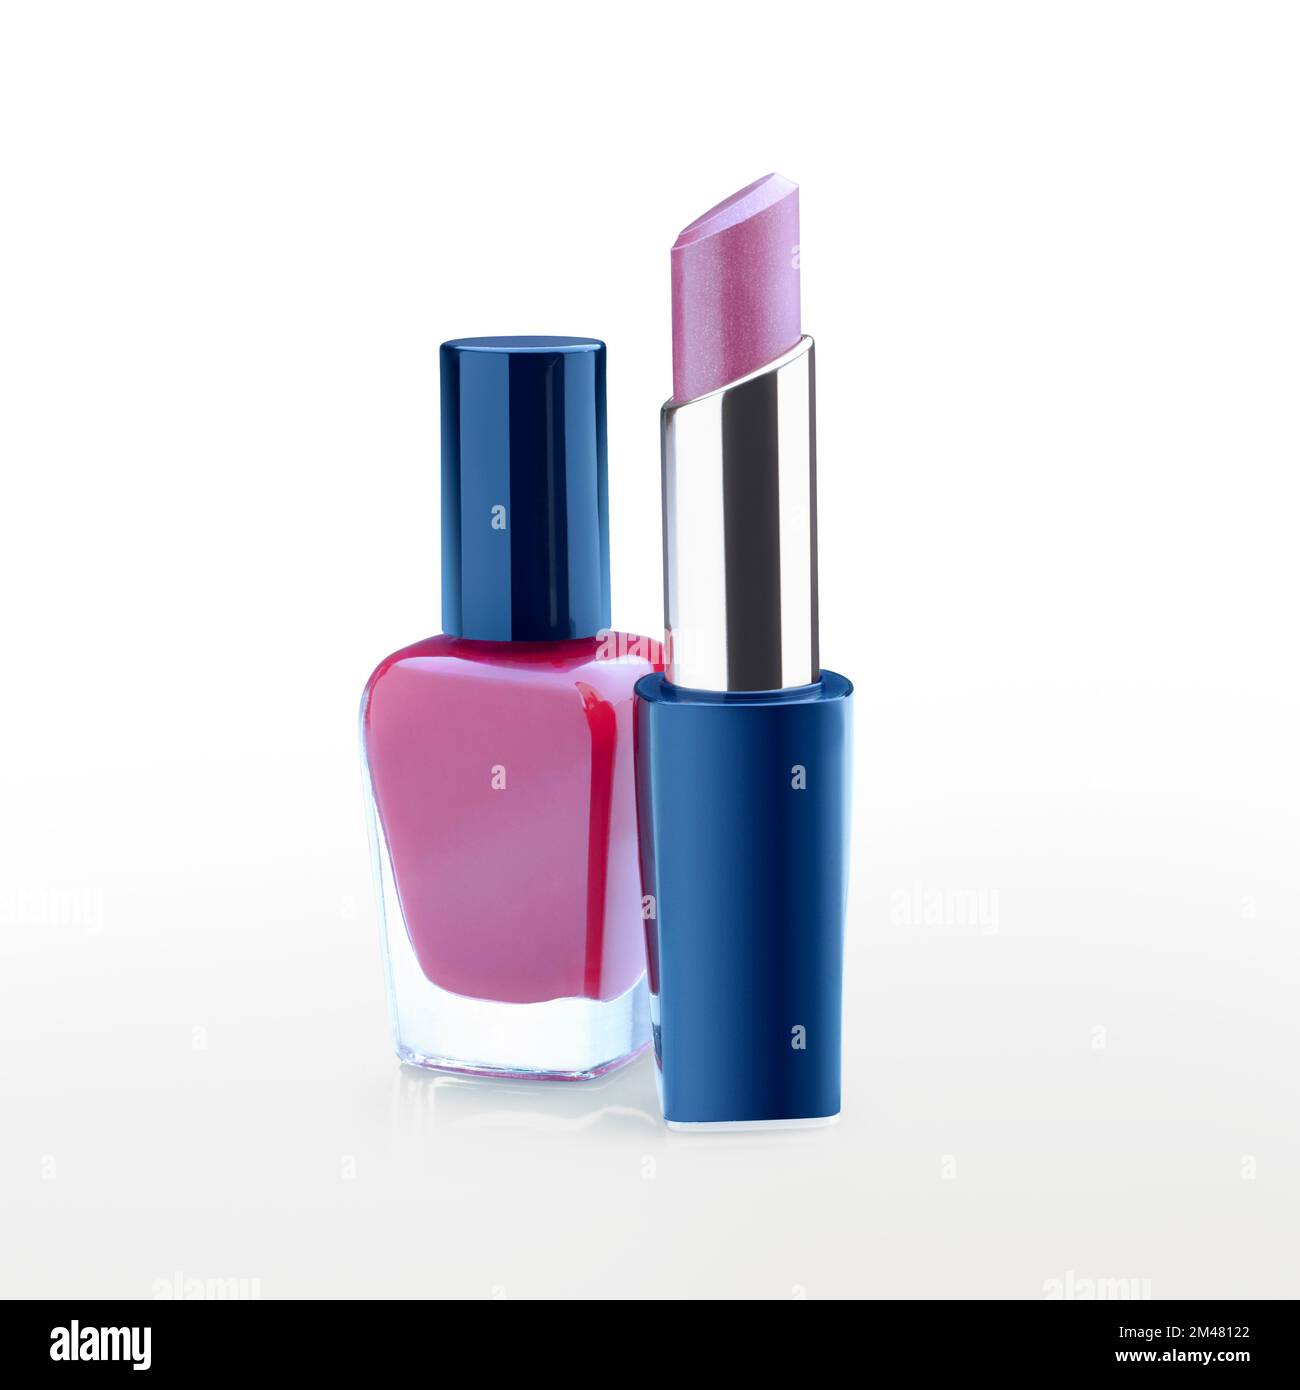 Immagine di un rossetto viola e di una bottiglia di smalto per unghie su sfondo bianco con un riflesso morbido. Tracciato di ritaglio Foto Stock